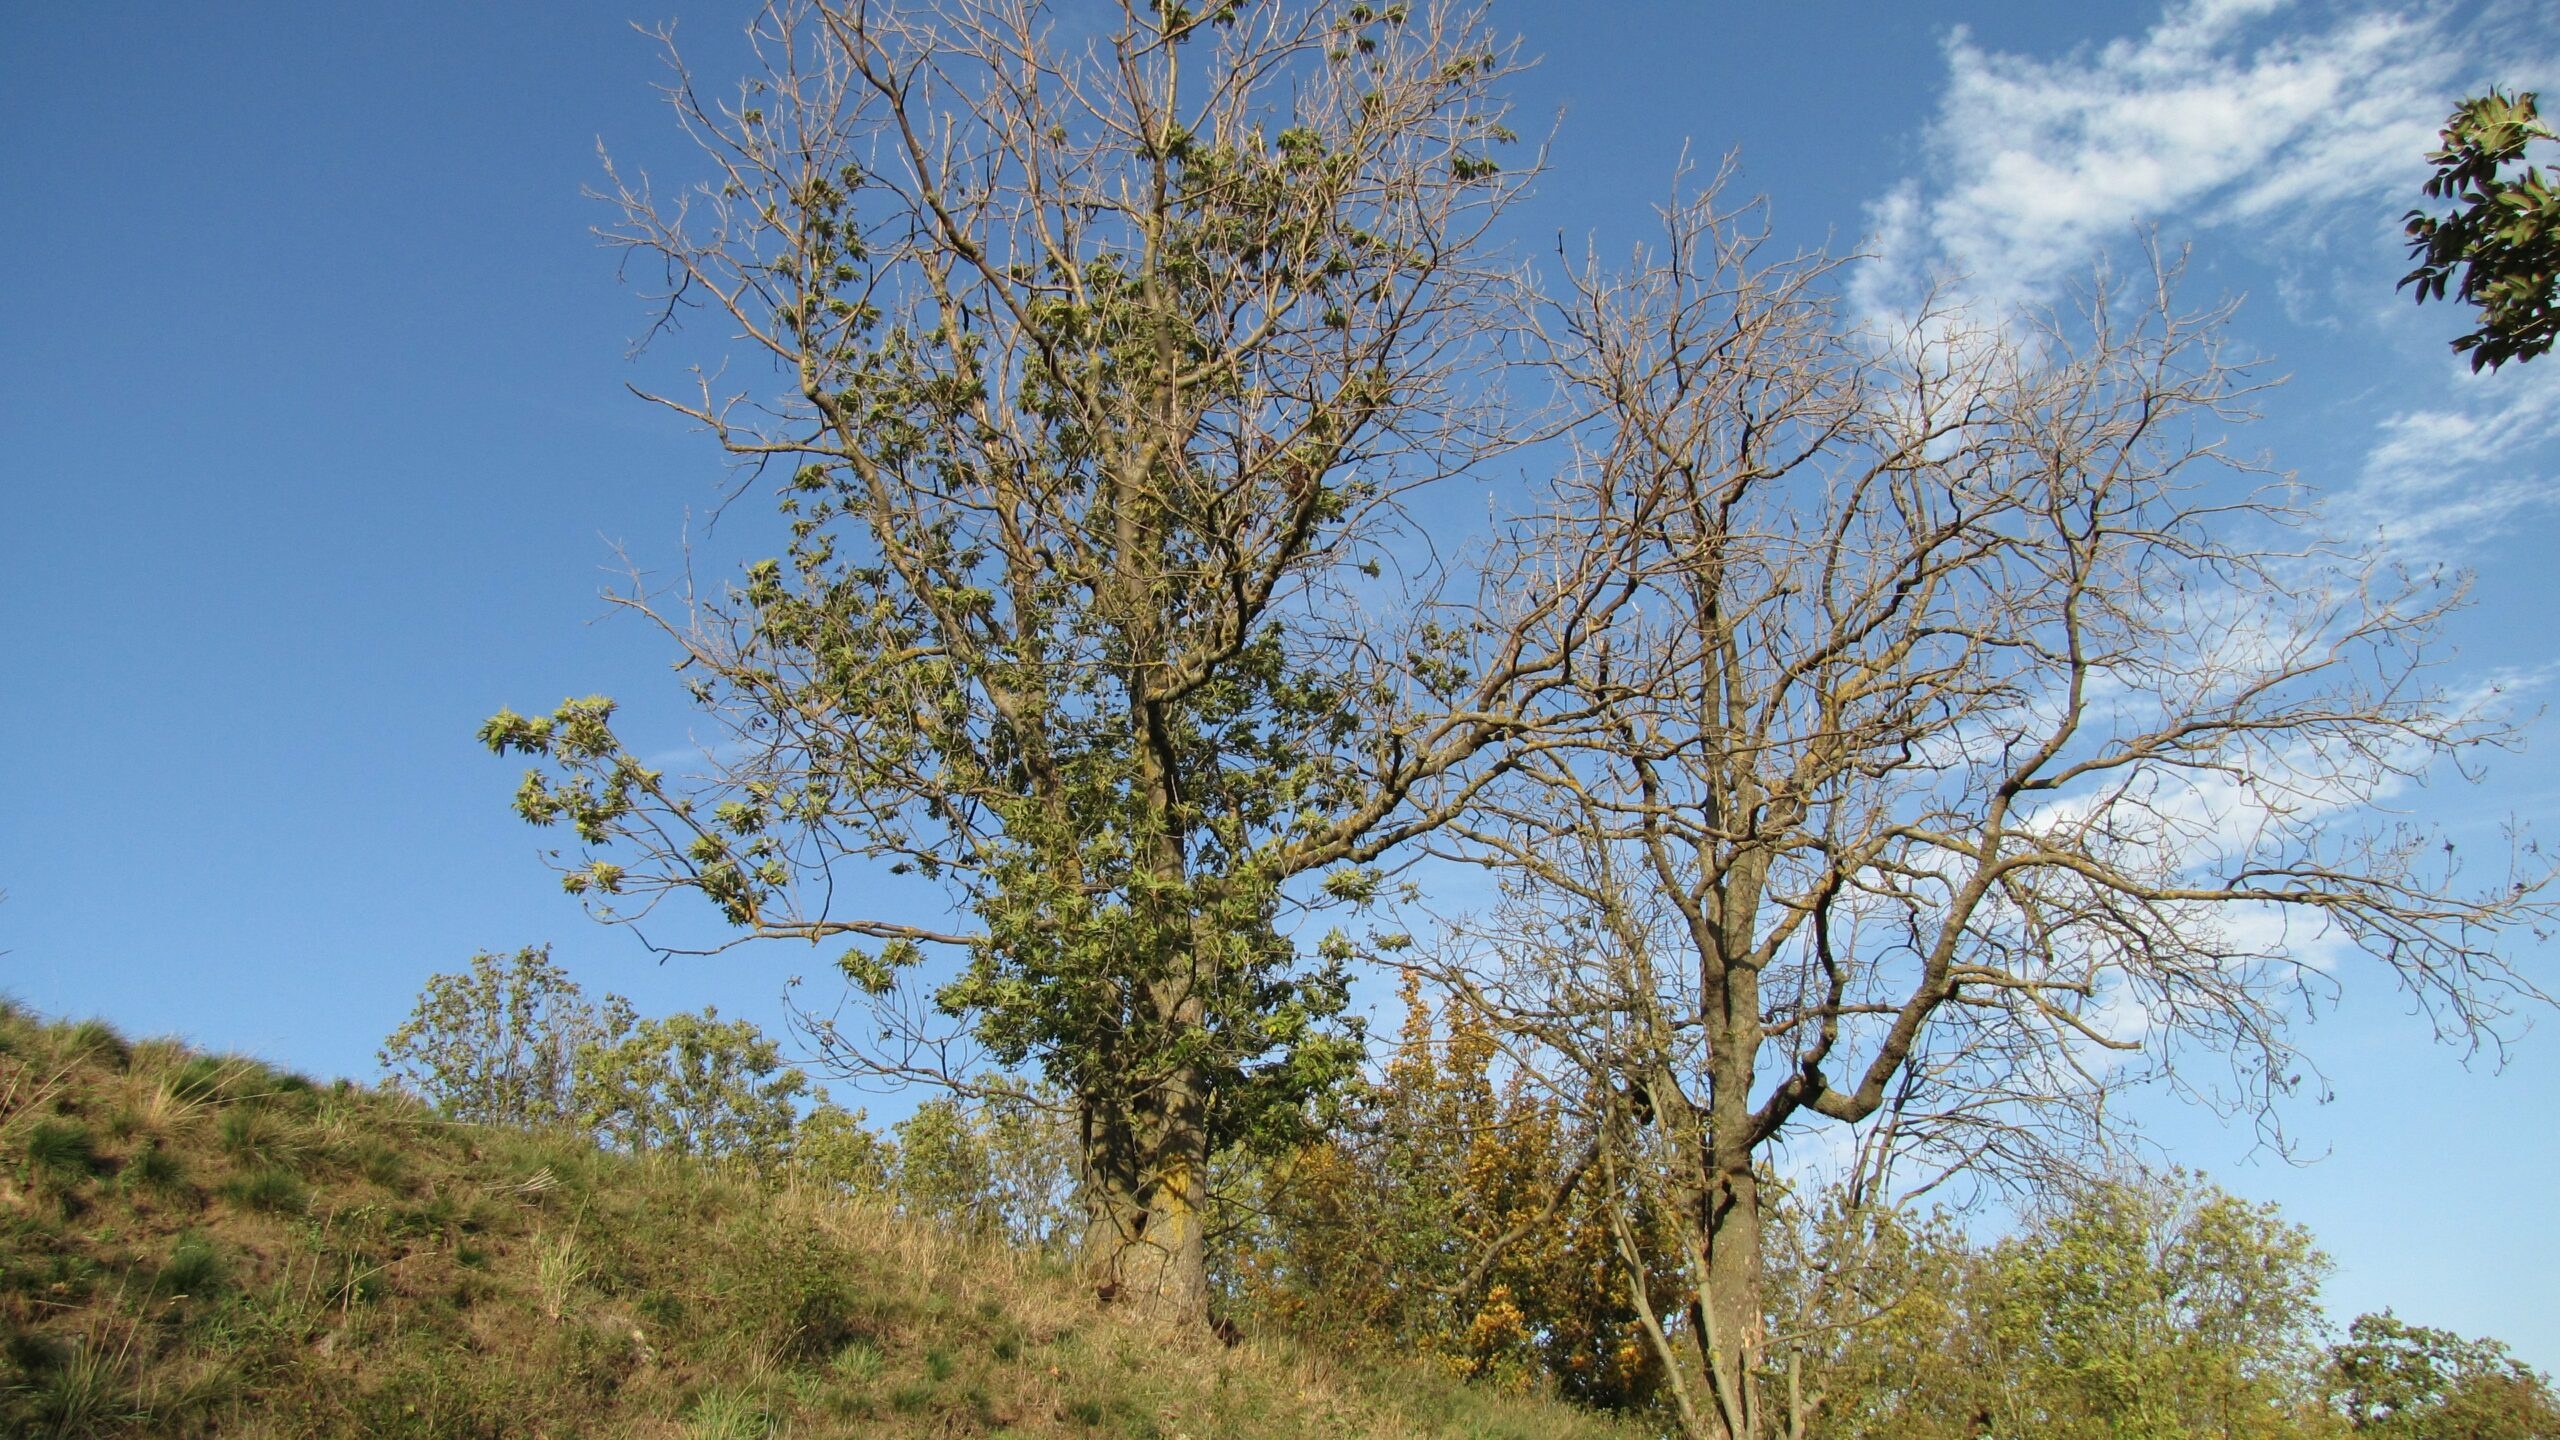 Burgruine Gleichen, Baum arbeiten, Cottonwood trees, German landscape, 2560x1440 HD Desktop